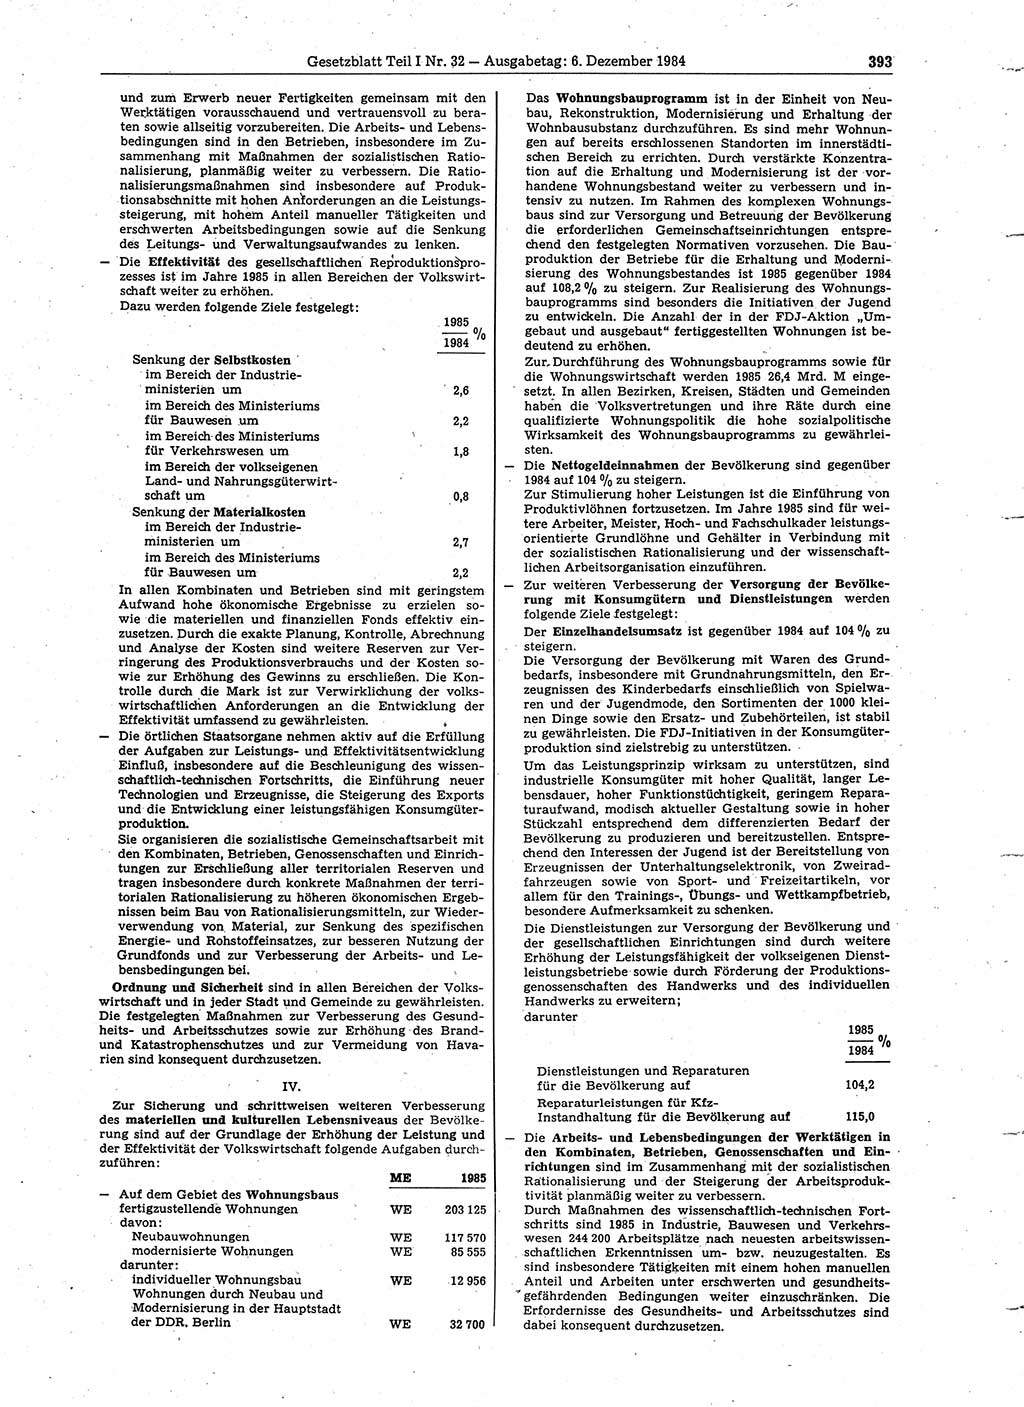 Gesetzblatt (GBl.) der Deutschen Demokratischen Republik (DDR) Teil Ⅰ 1984, Seite 393 (GBl. DDR Ⅰ 1984, S. 393)